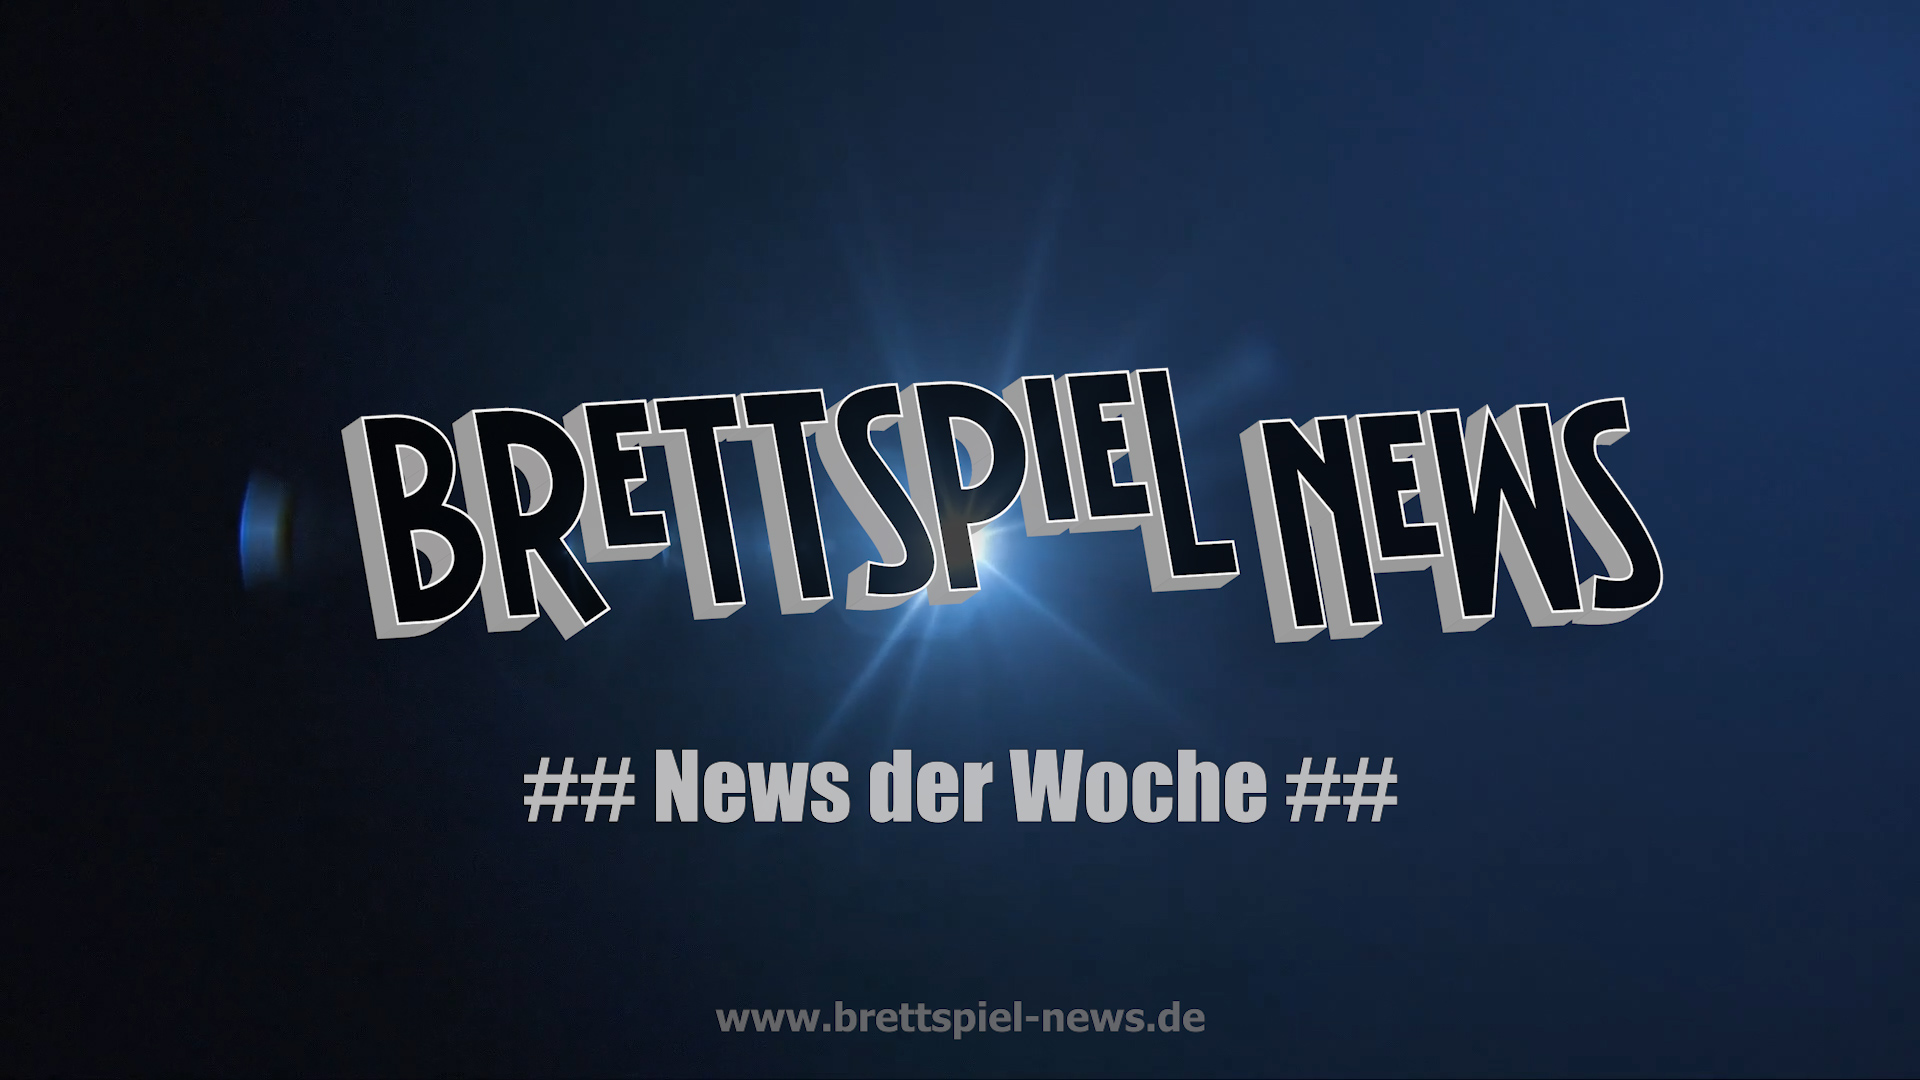 VIDEO // BrettspielNews - KW 11